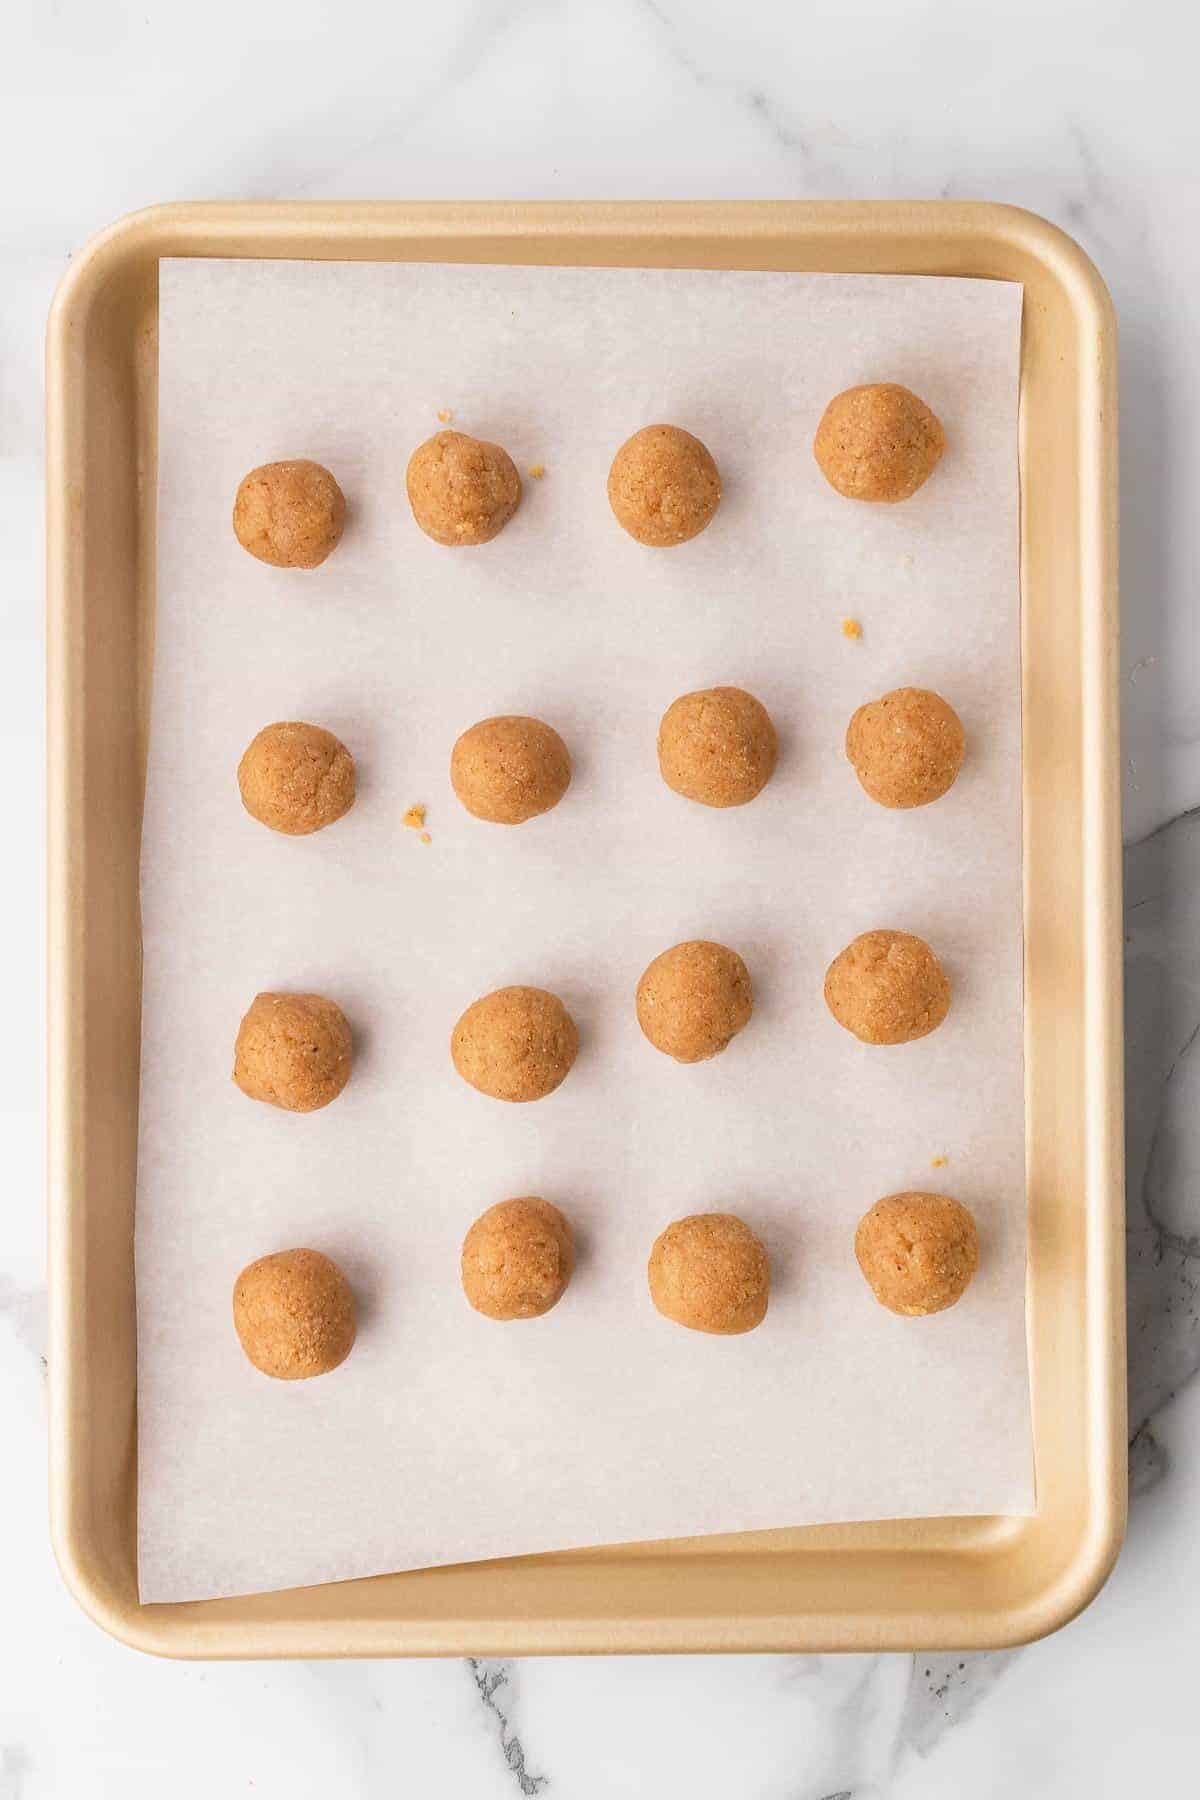 16 cookie dough balls on a baking sheet